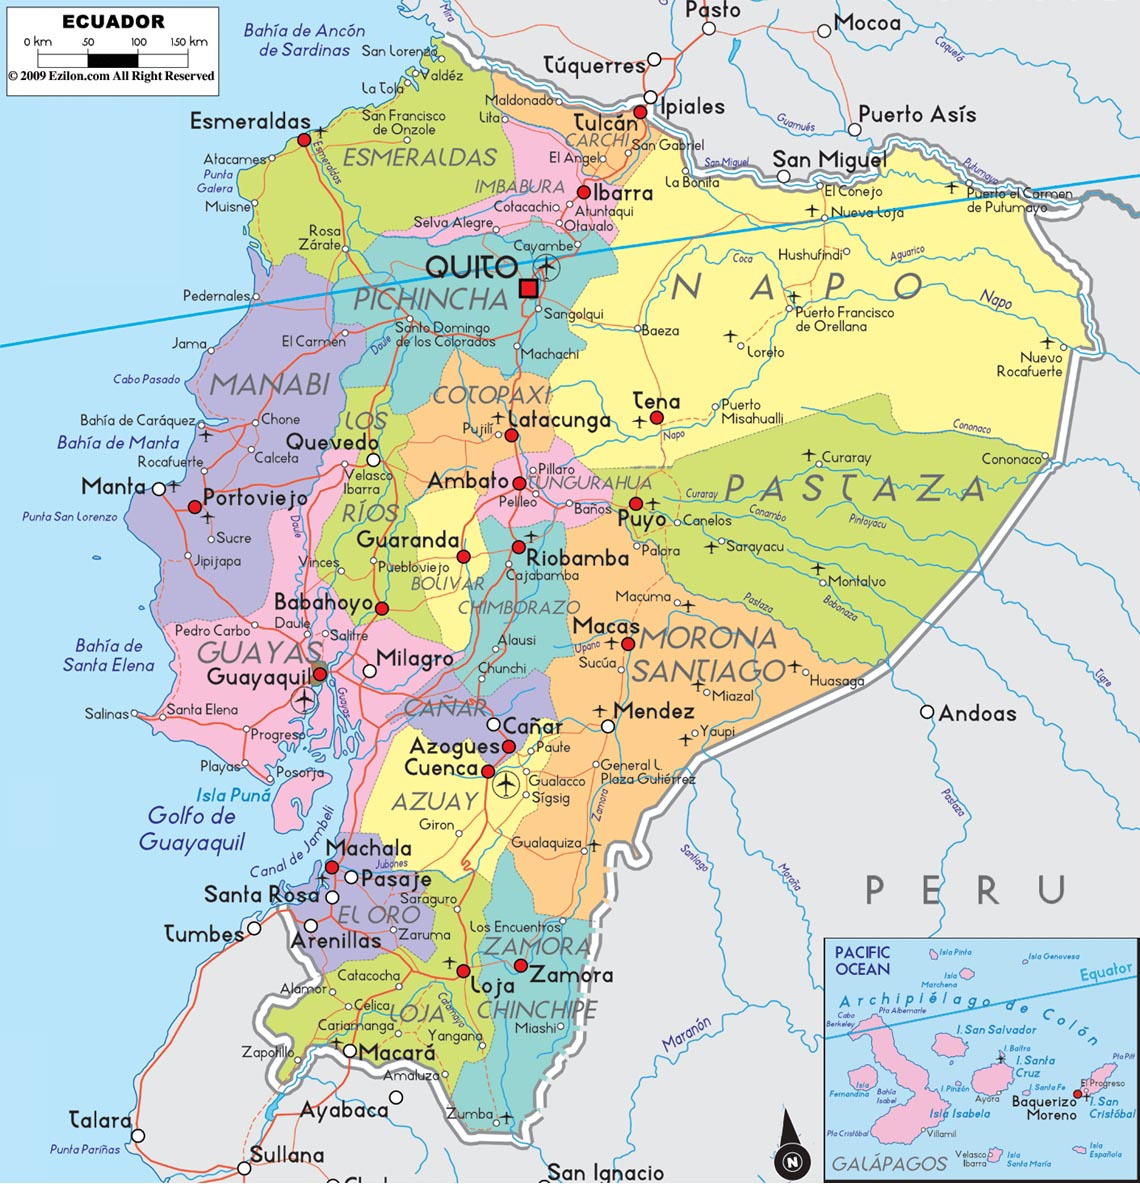 Geografia do Equador 